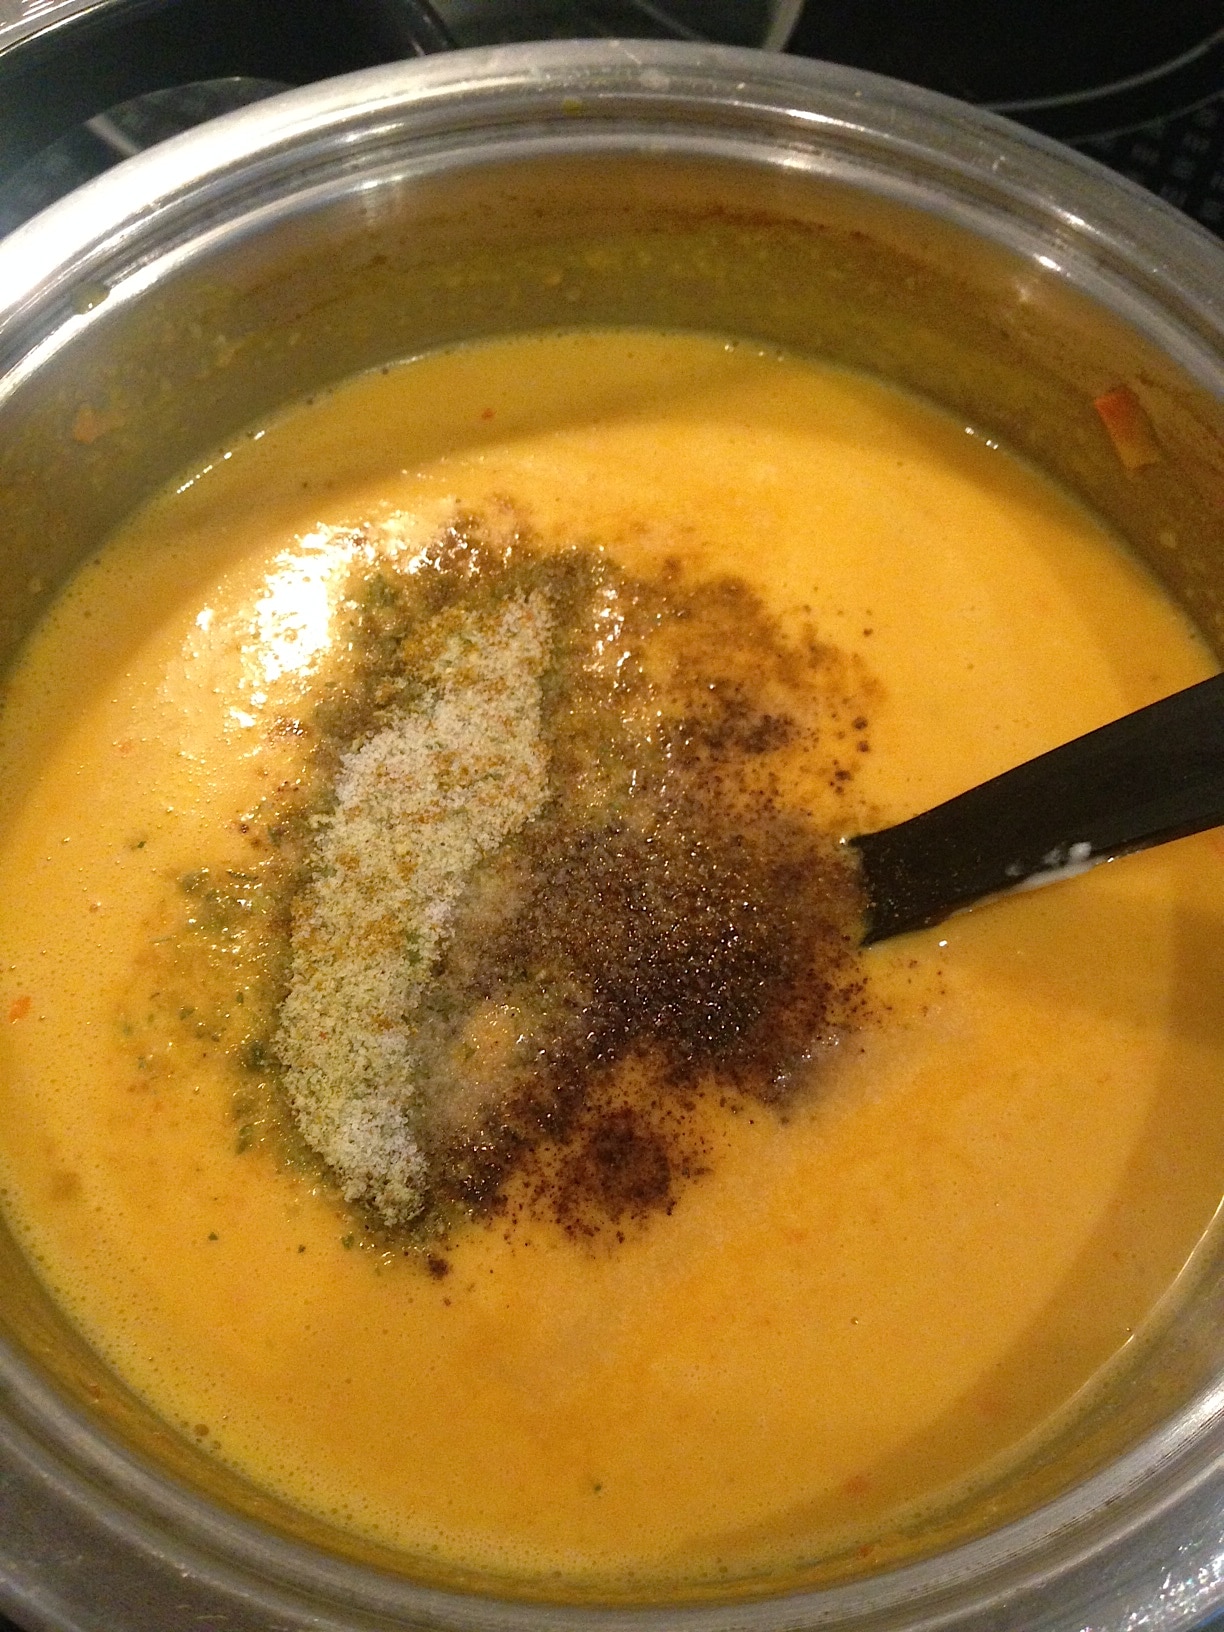 Vegane Low Carb Kürbissuppe mit natürlichen Gewürzen. Rezept Kürbissuppe mit Karotten, Kokos und Sellerie. Super lecker und super schnell kannst du dieses Kürbis Rezept in deinen Alltag integrieren und den Herbst mit dieser Kürbissuppe so richtig genießen. Wenn du Diät machst, ist diese Suppe geeignet. Besonders abends ist sie gut verdaulich für deinen Magen. #Kürbissuppe #Suppe #Kürbis #Kokossuppe